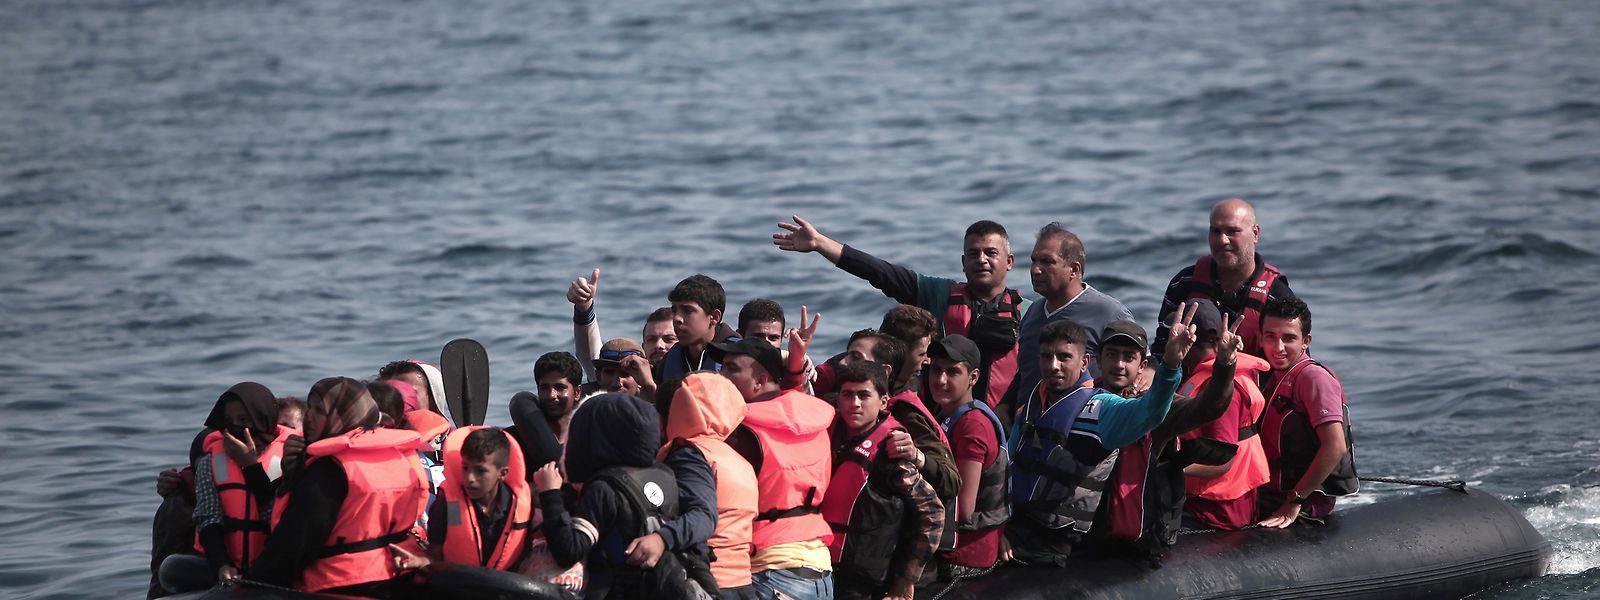 In einem Schlauchboot wie diesem waren die Flüchtlinge unterwegs.